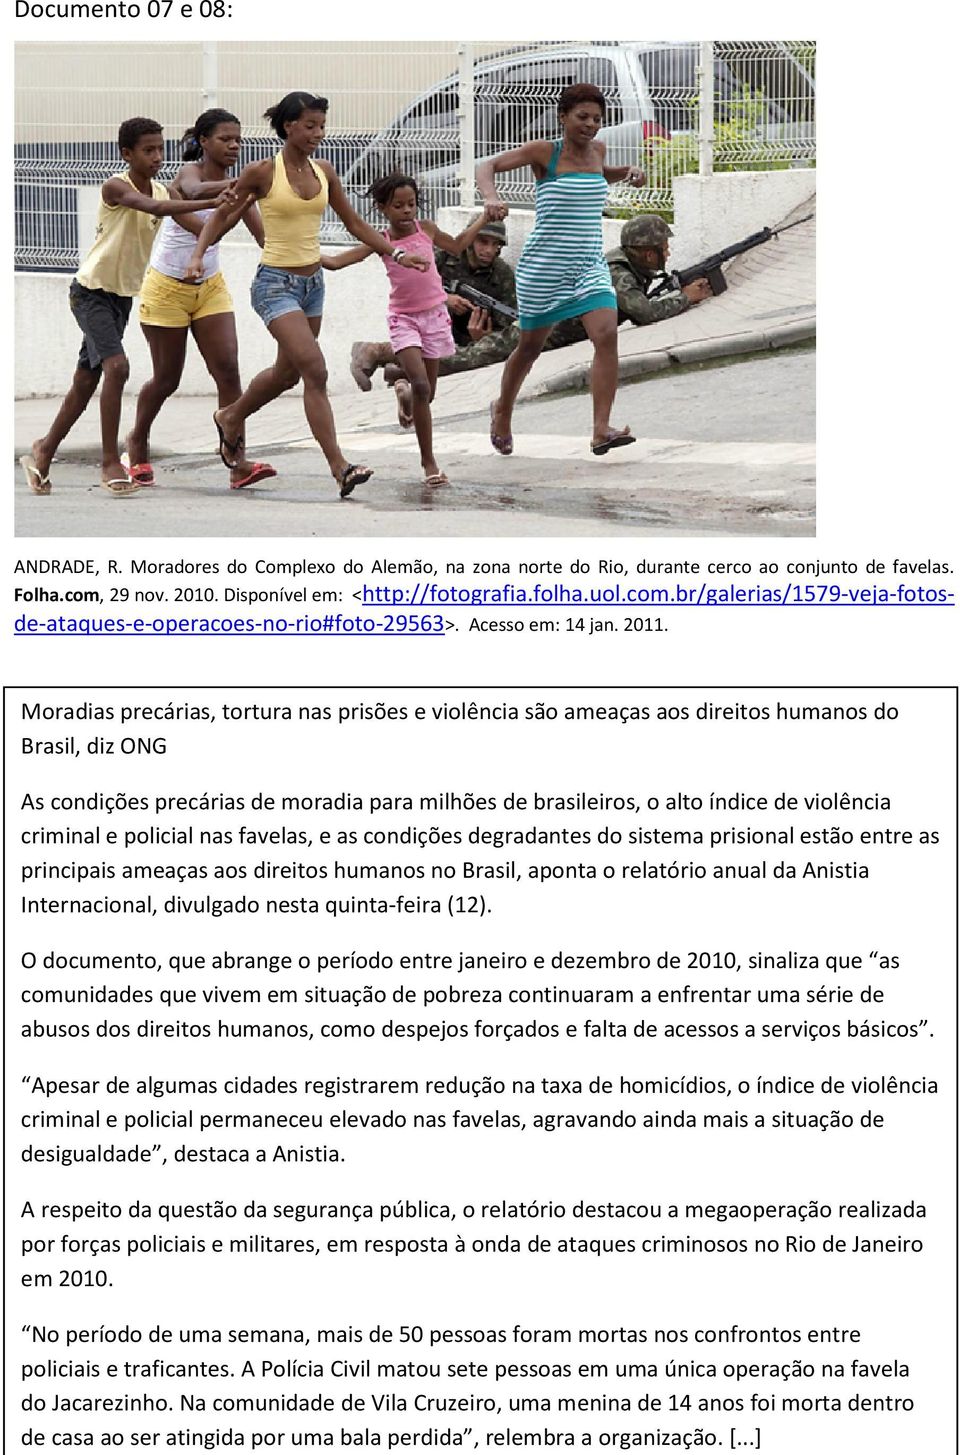 Documento 8: Moradias precárias, tortura nas prisões e violência são ameaças aos direitos humanos do Brasil, diz ONG As condições precárias de moradia para milhões de brasileiros, o alto índice de